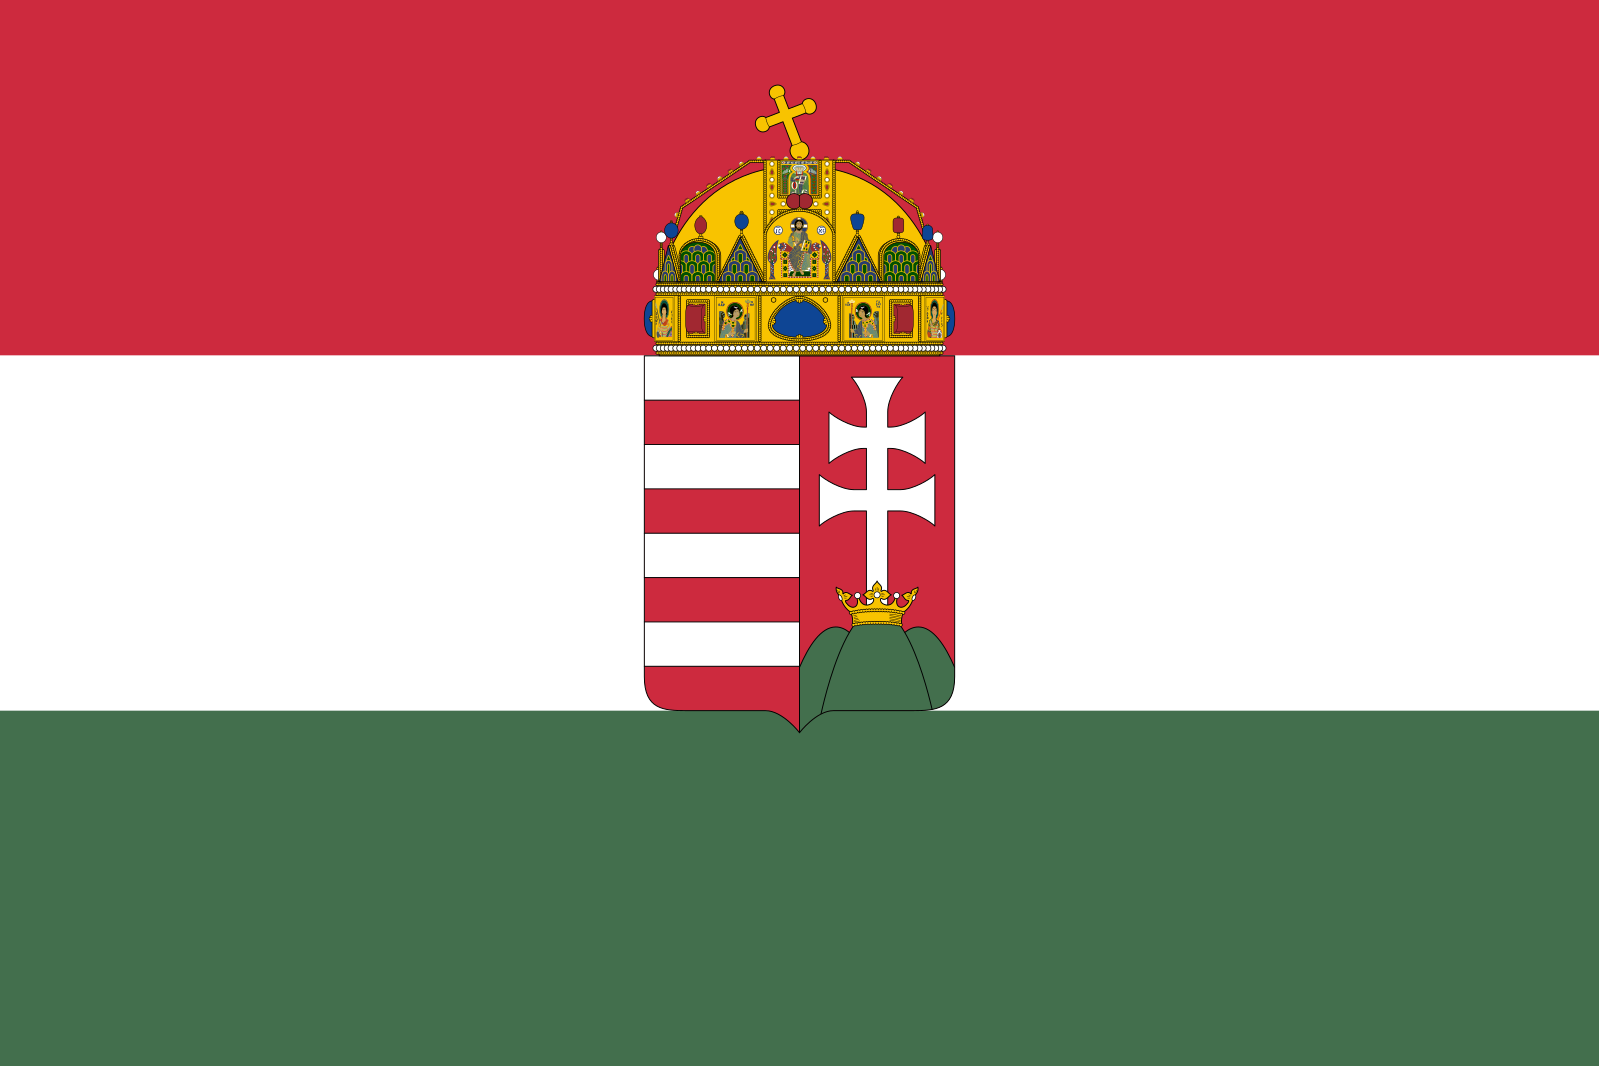 венгерский флаг с гербом картинки большой